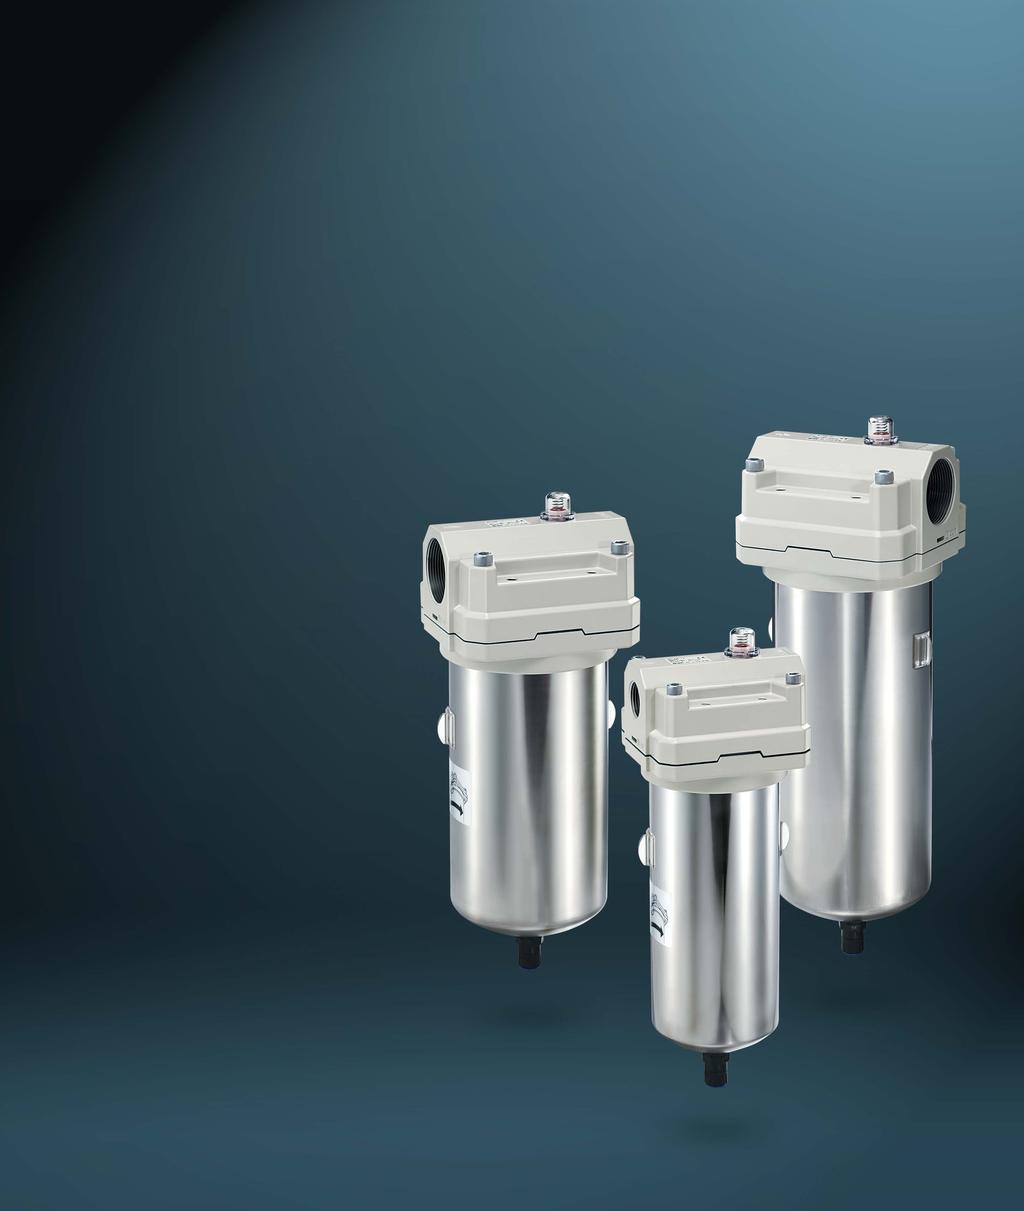 압축공기청정화필터 압축공기청정등급 ISO573 메인라인필터 Series